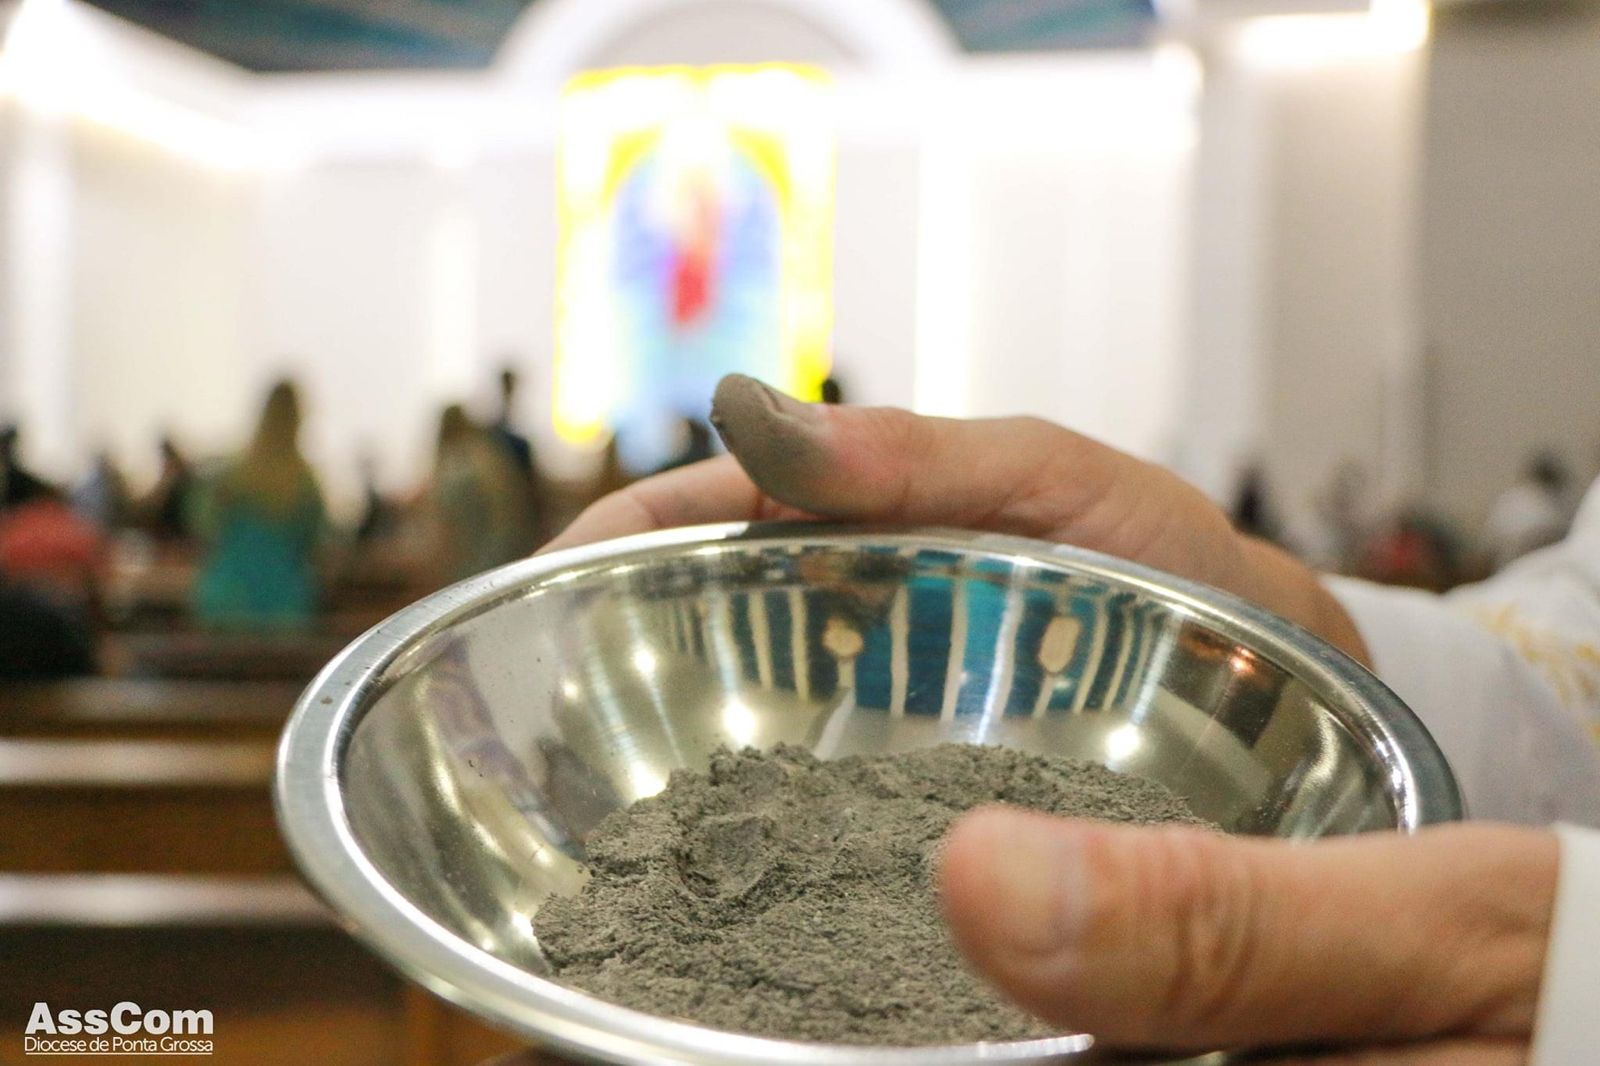 As paróquias de toda a Diocese terão missa com imposição de cinzas nesta quarta-feira